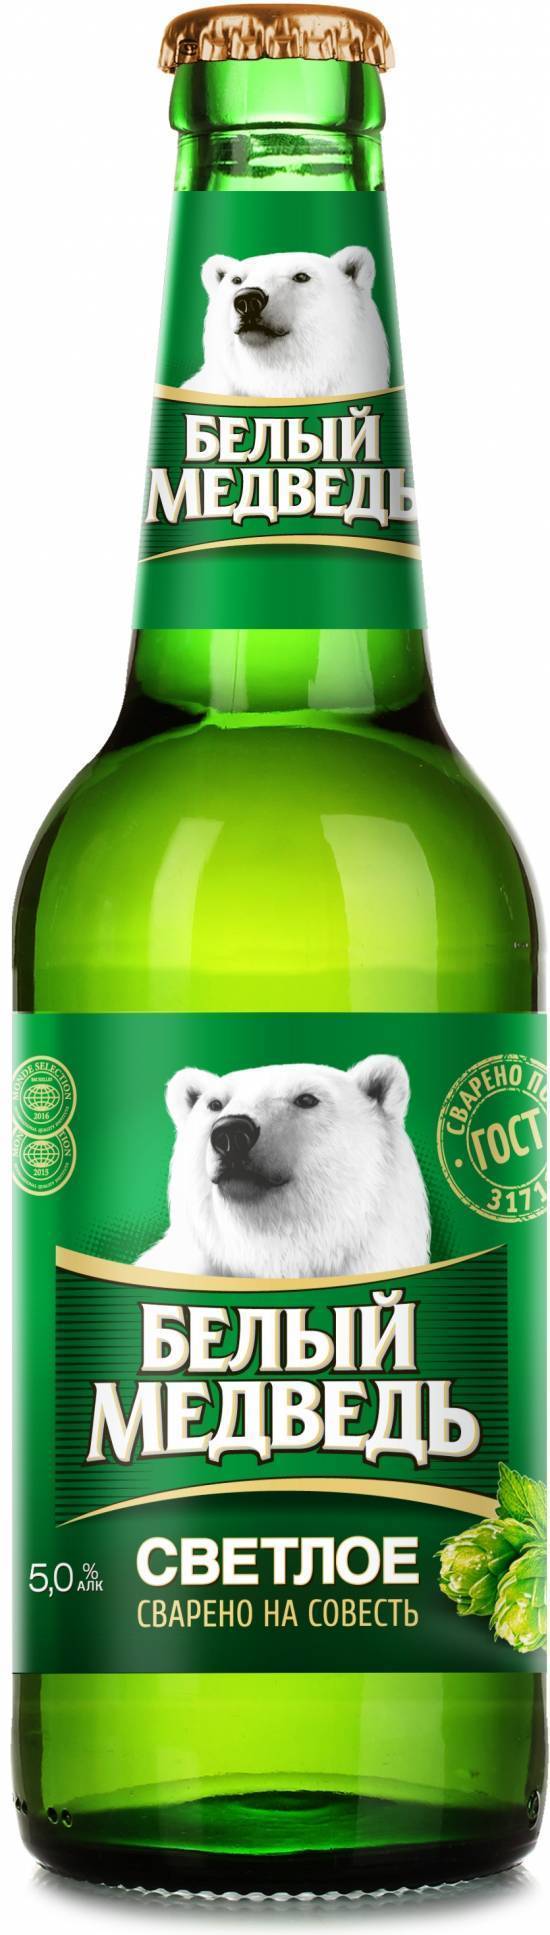 Пиво белый медведь и его особенности